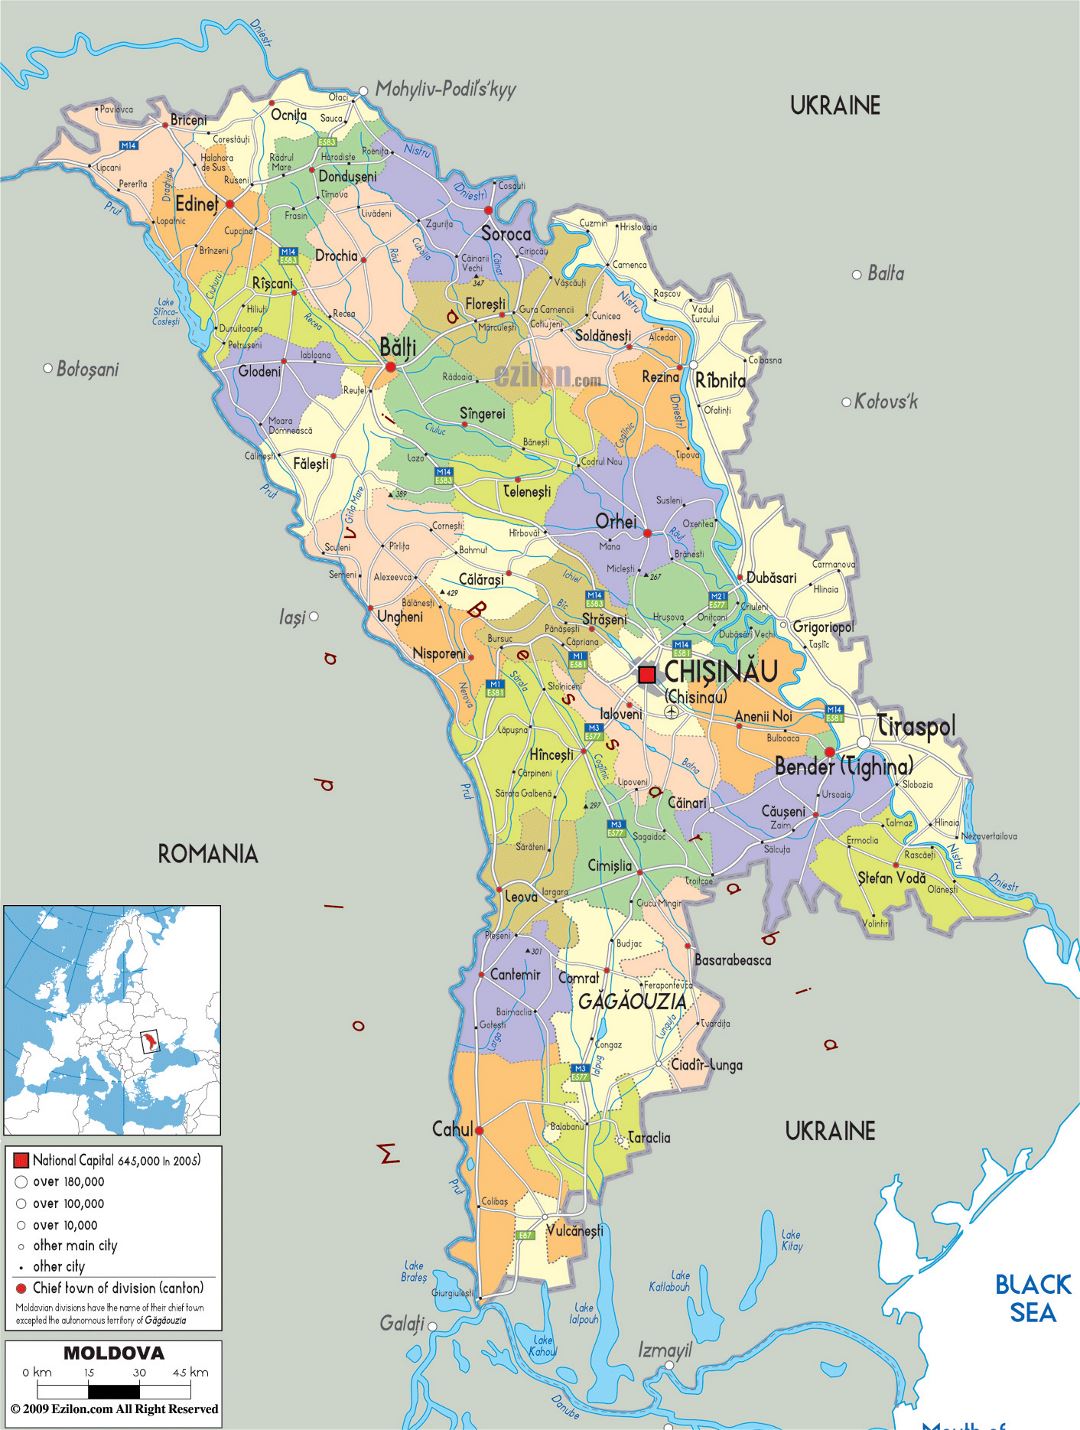 Grande mapa político y administrativo de Moldavia con carreteras, ciudades y aeropuertos